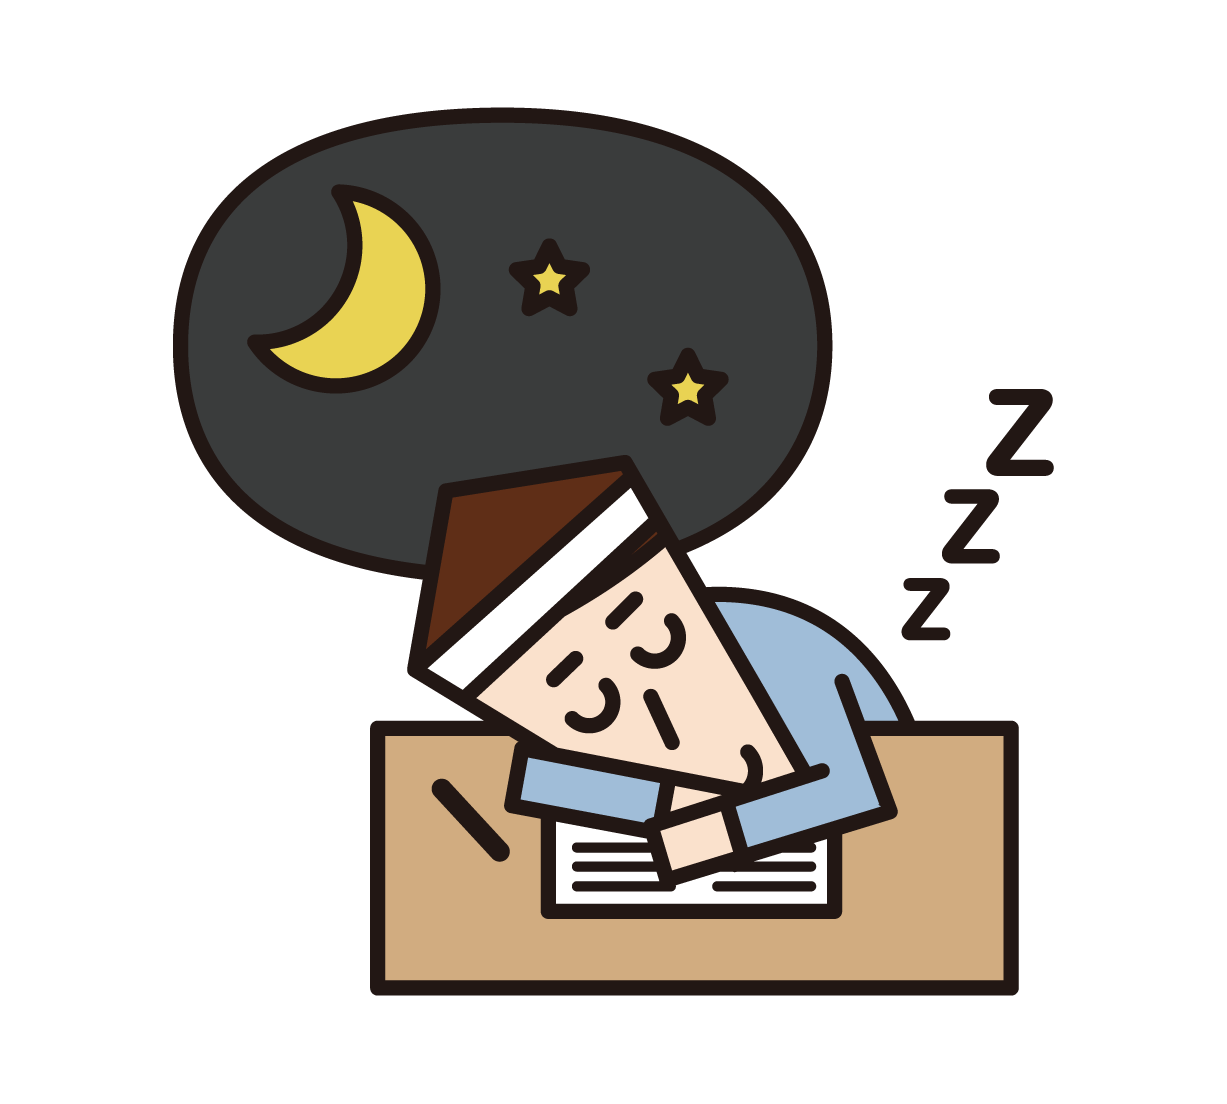 입시를 위해 공부하는 동안 피곤하고 자고있는 사람 (남성)의 삽화